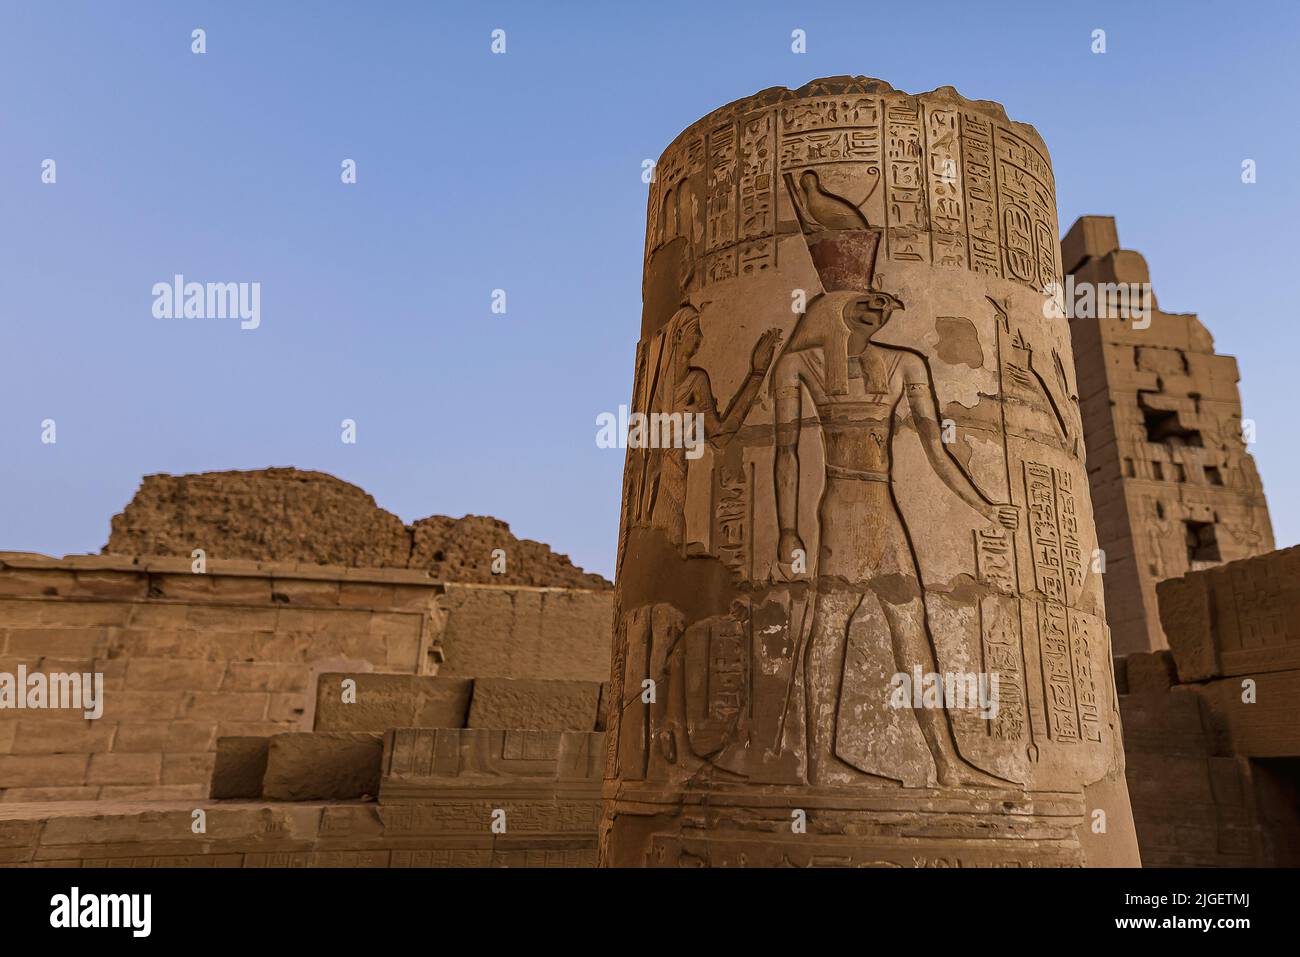 Relieve del dios egipcio Horus en una columna en el templo de Kom Ombo, Egipto, Oktober 23, 2018 Foto de stock